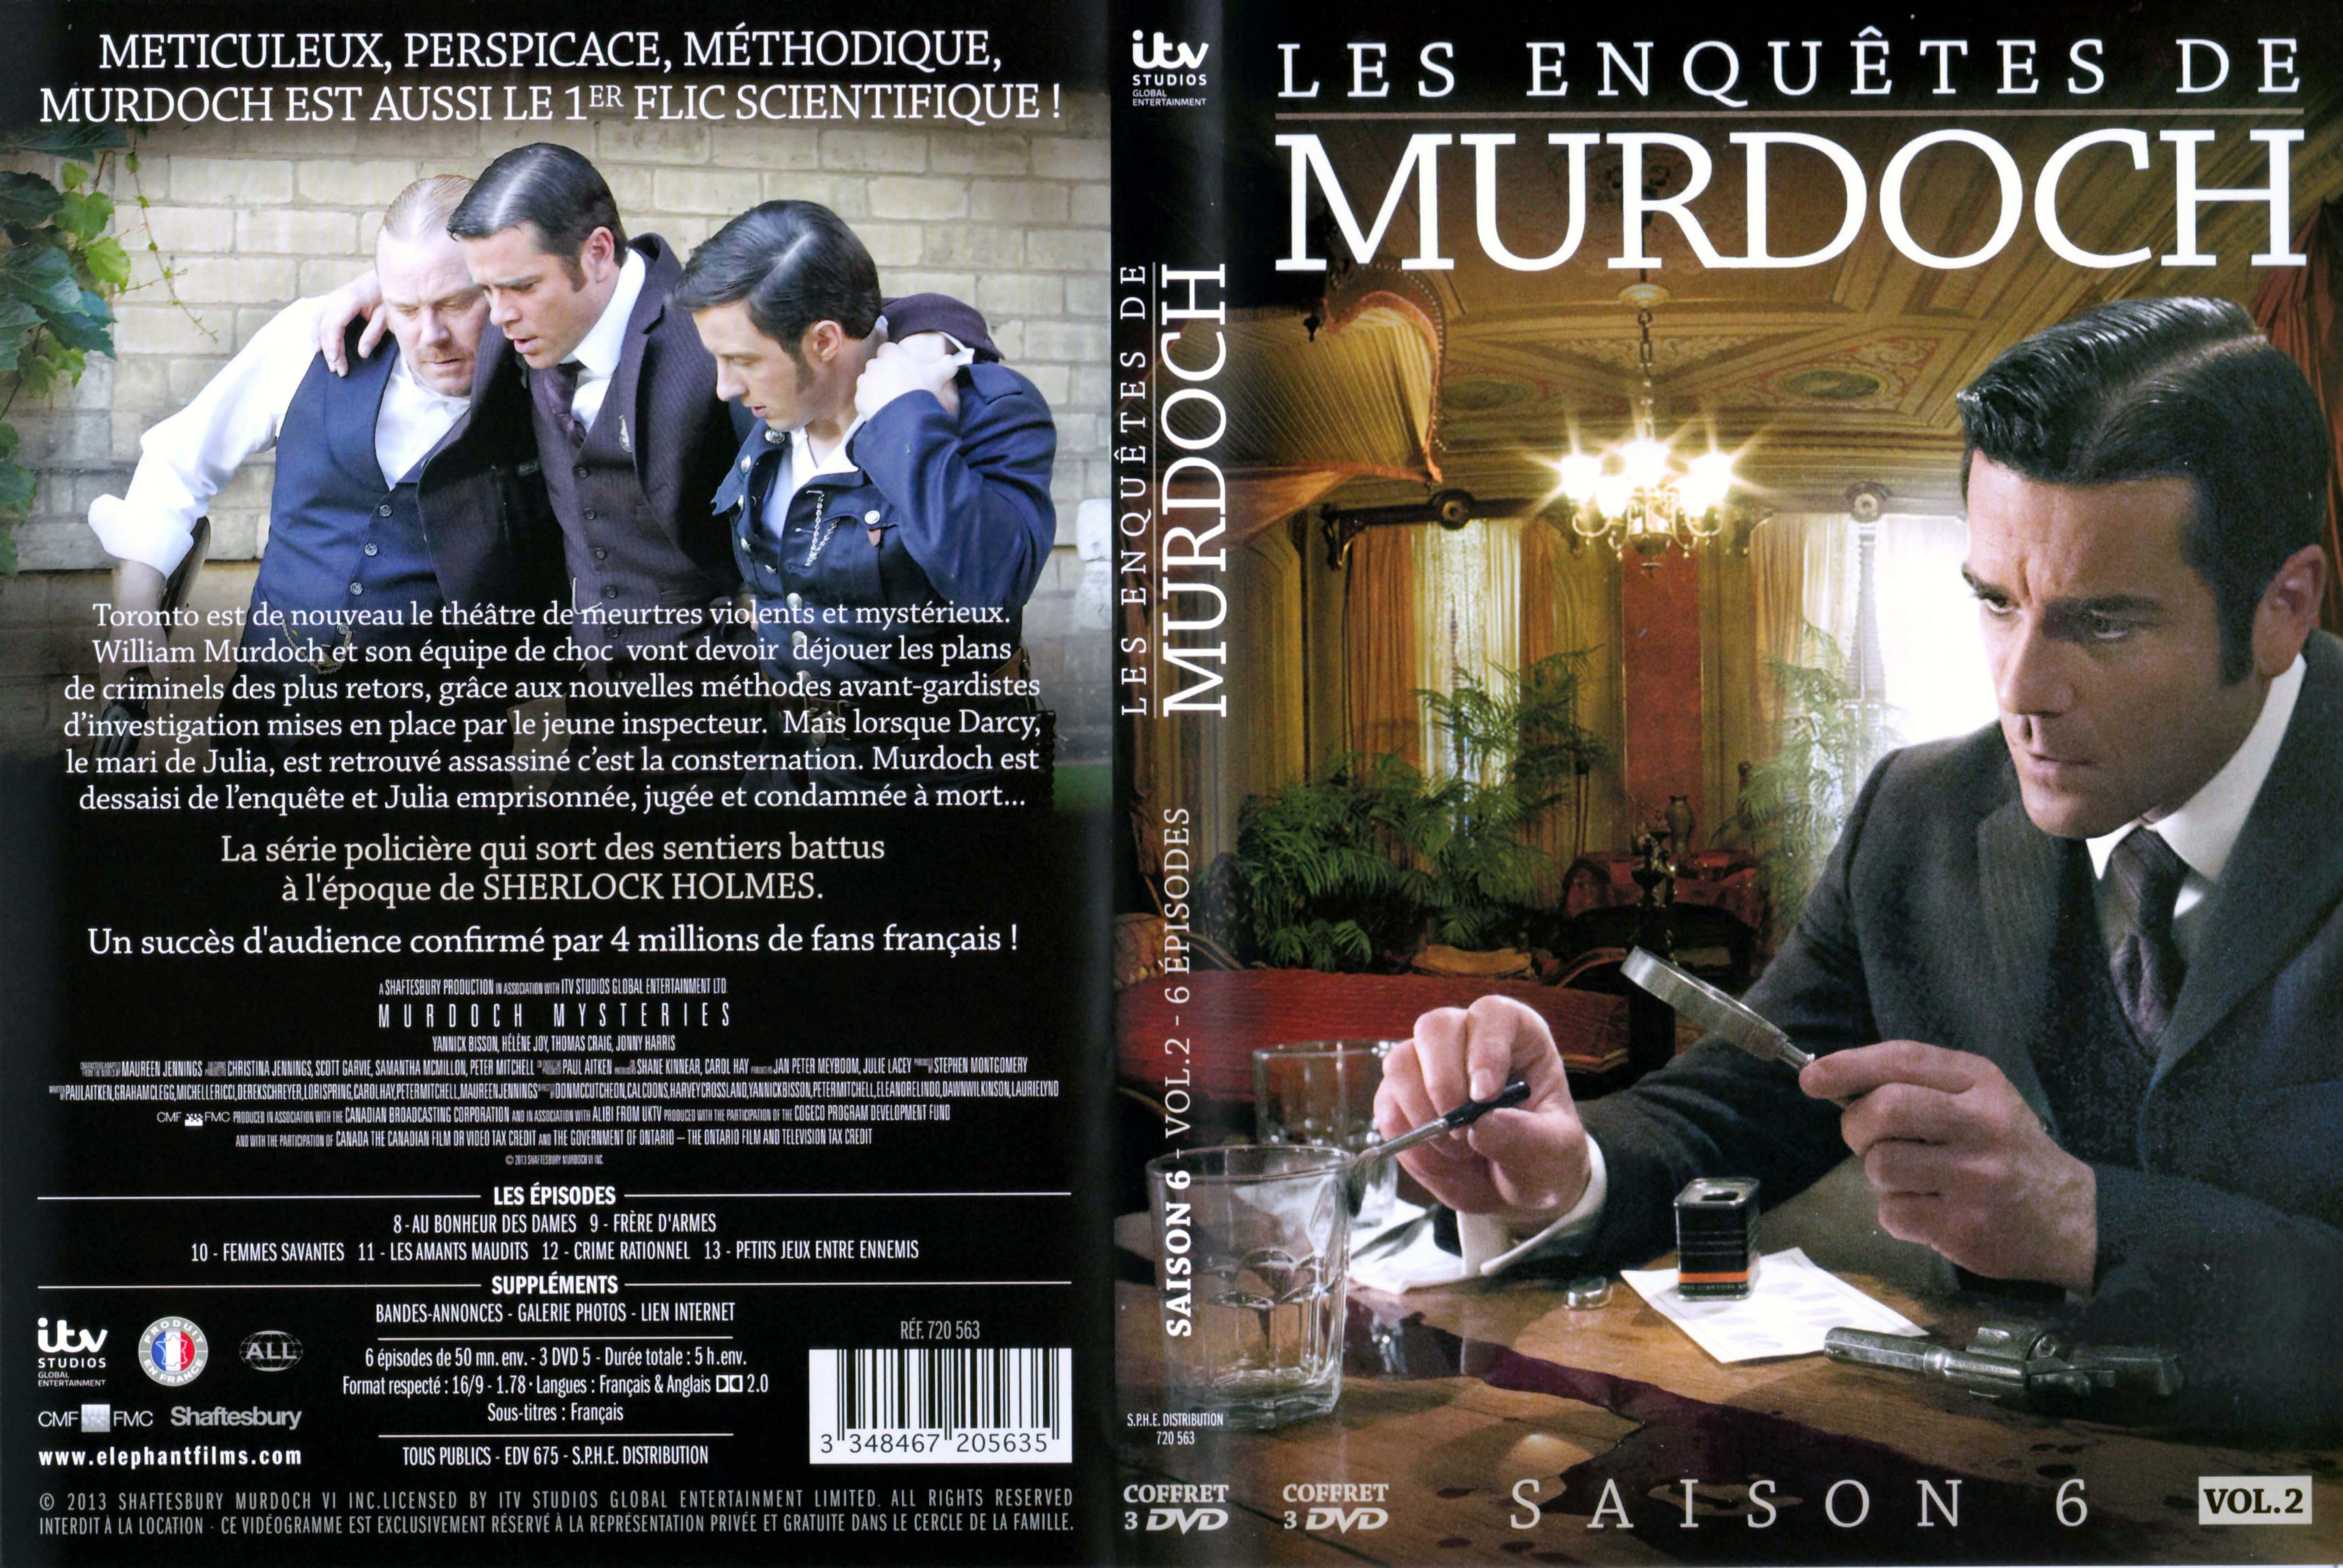 Jaquette DVD Les enqutes de Murdoch Saison 6 Vol 2